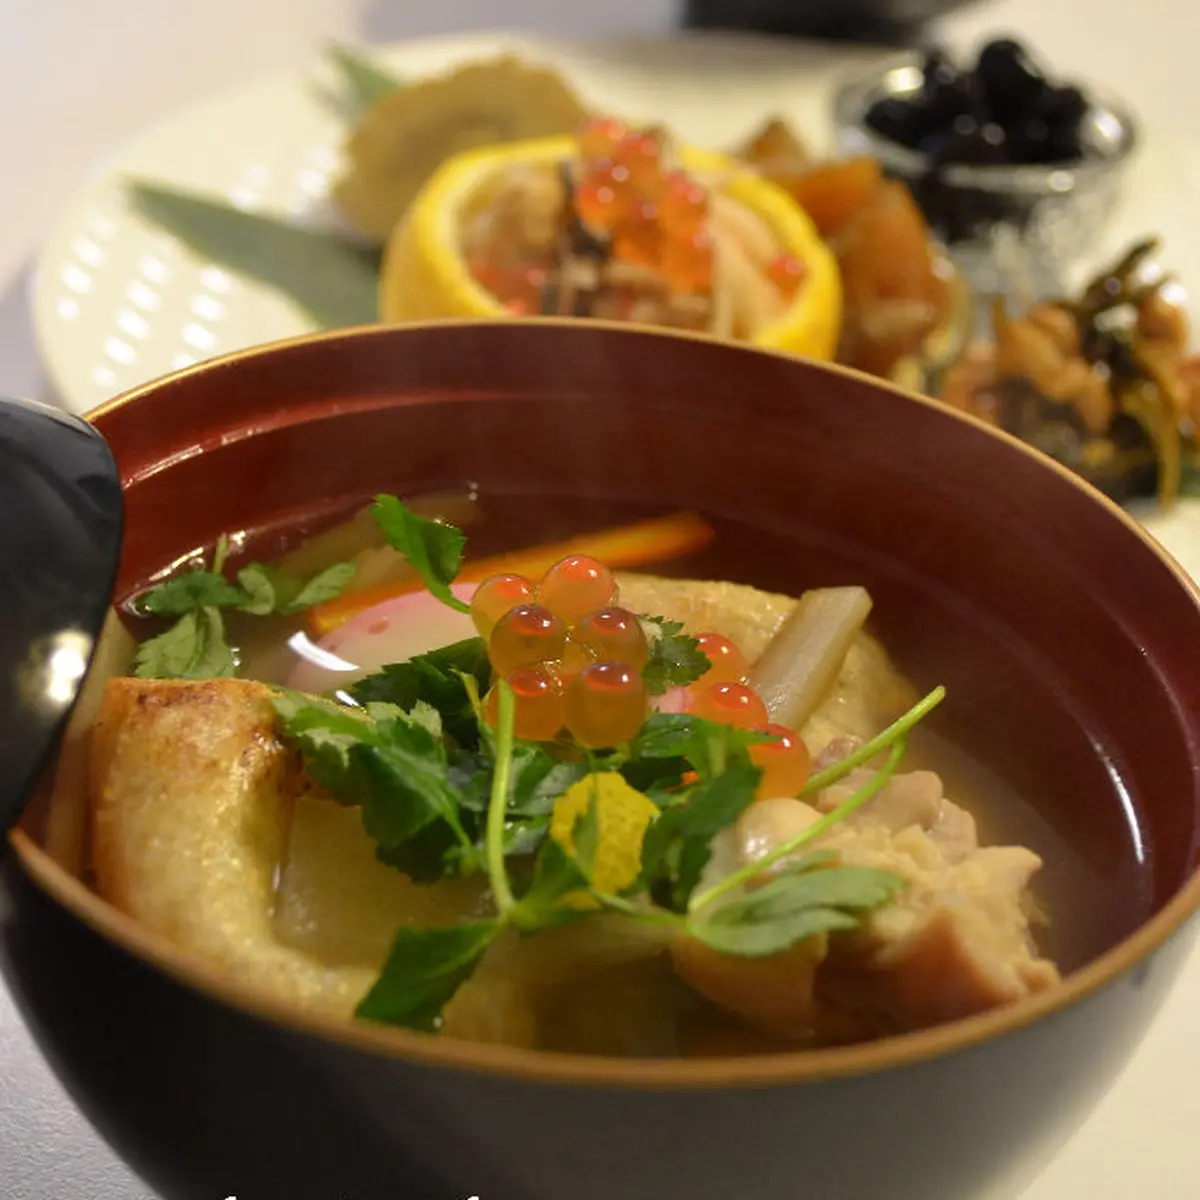 お雑煮 しっかりおだしで関西風薄味仕上げ のレシピ 作り方 緒方 亜希野 料理教室検索サイト クスパ